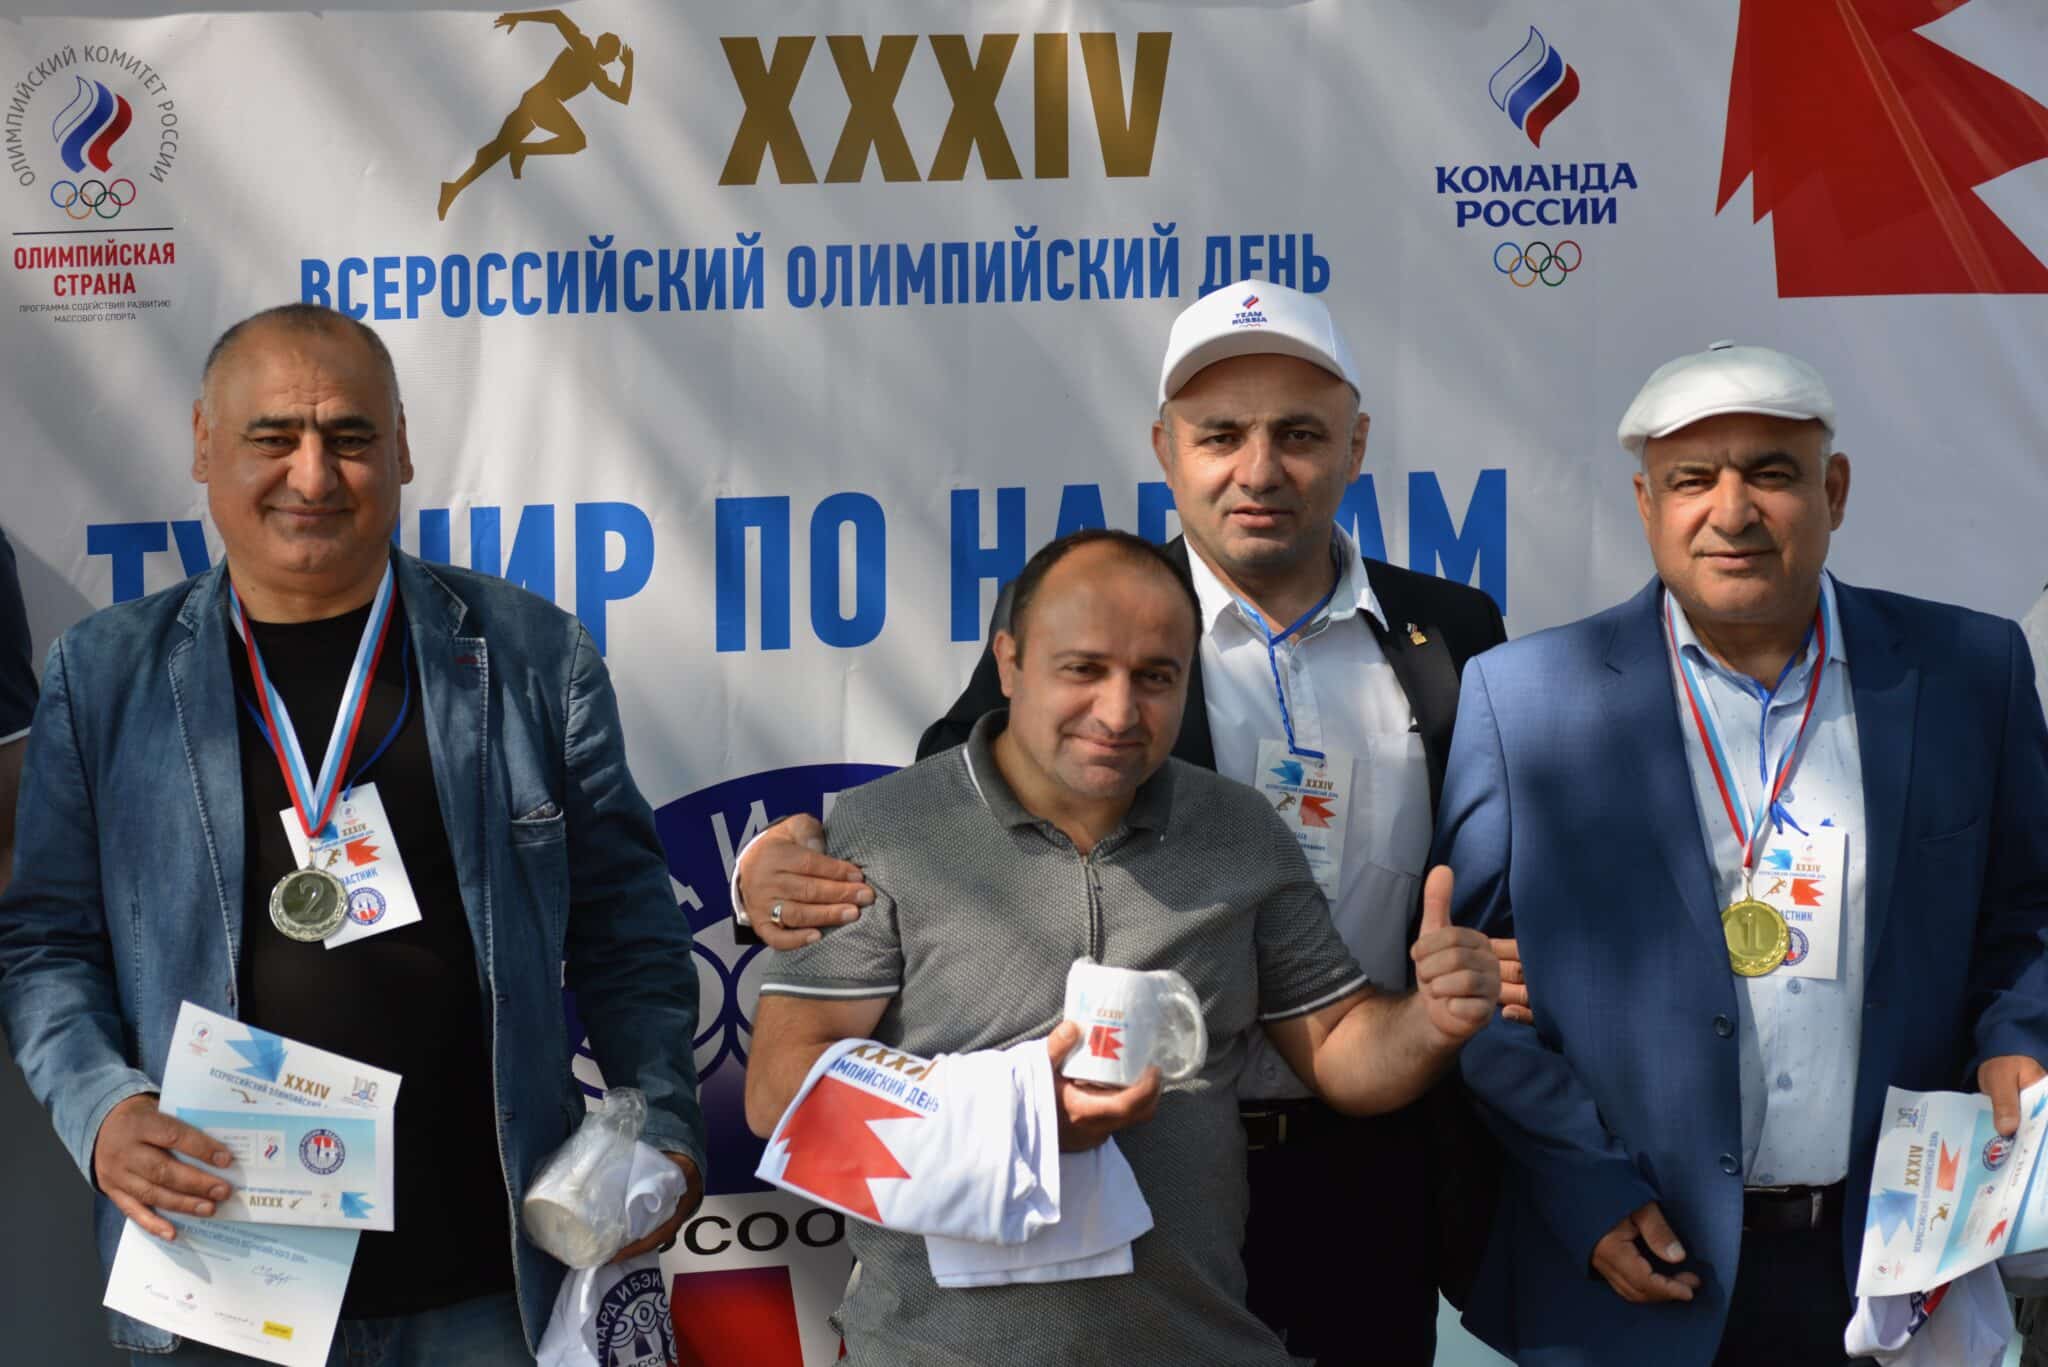 Праздник спорта и хорошего настроения: XXXIV Всероссийский Олимпийский день прошел в Костроме 18 июня